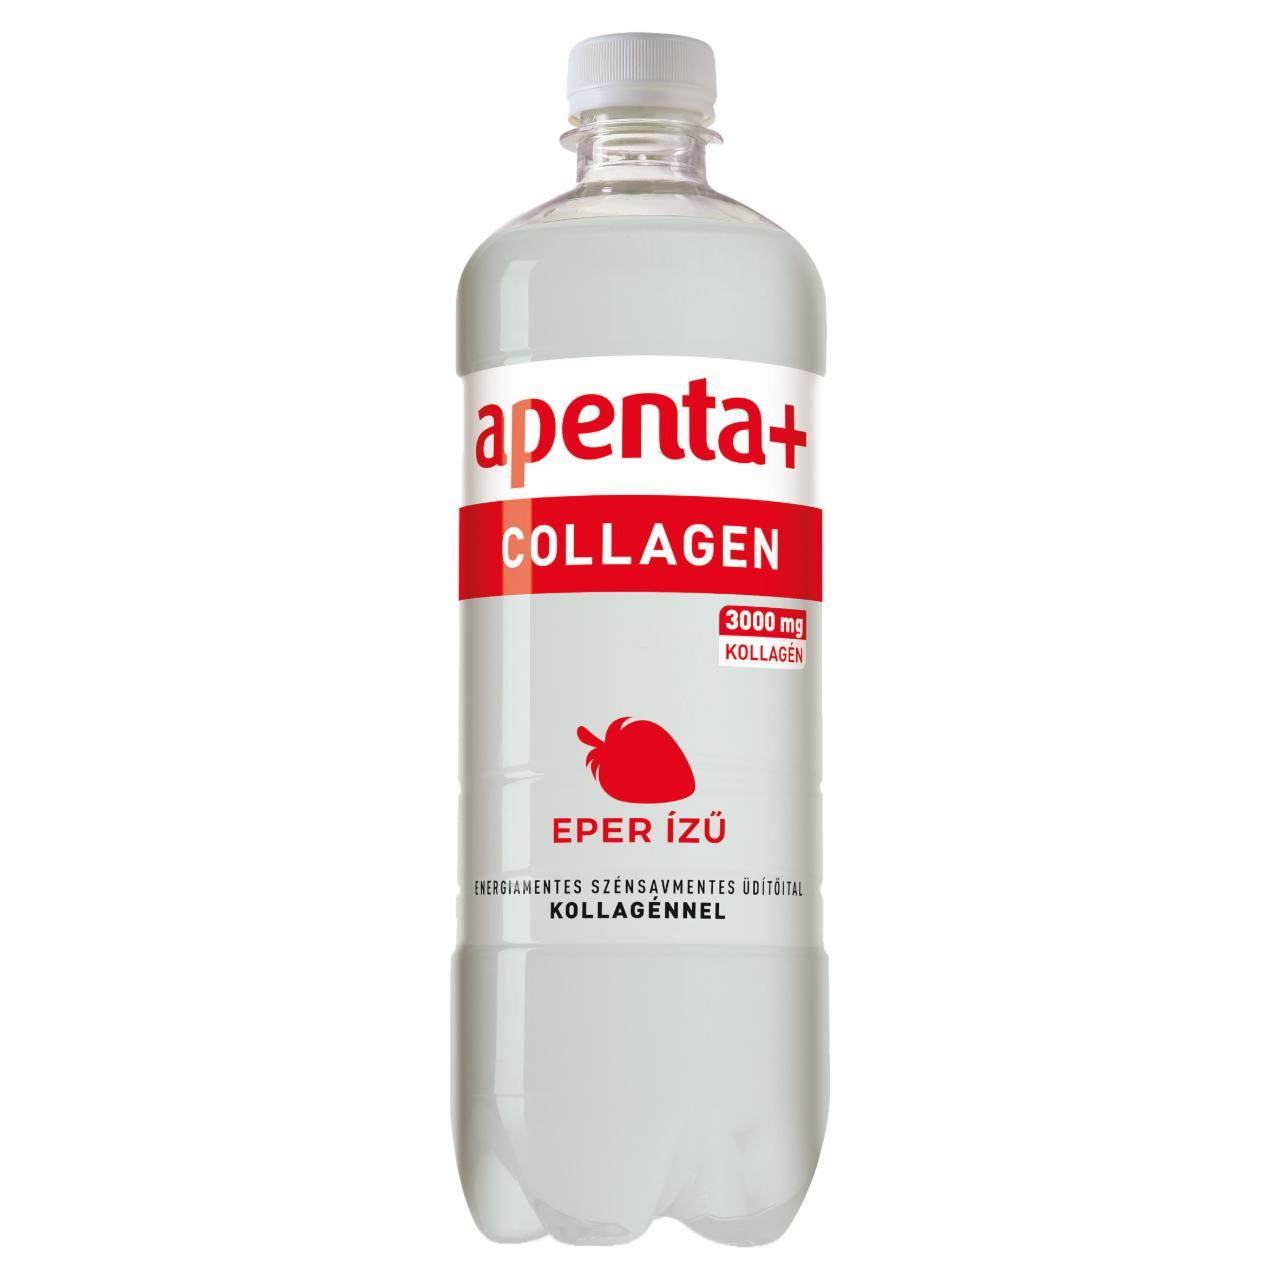 Képek - Apenta+ Collagen eperízű szénsavmentes, energiamentes üdítőital édesítőszerekkel, kollagénnel 750 ml